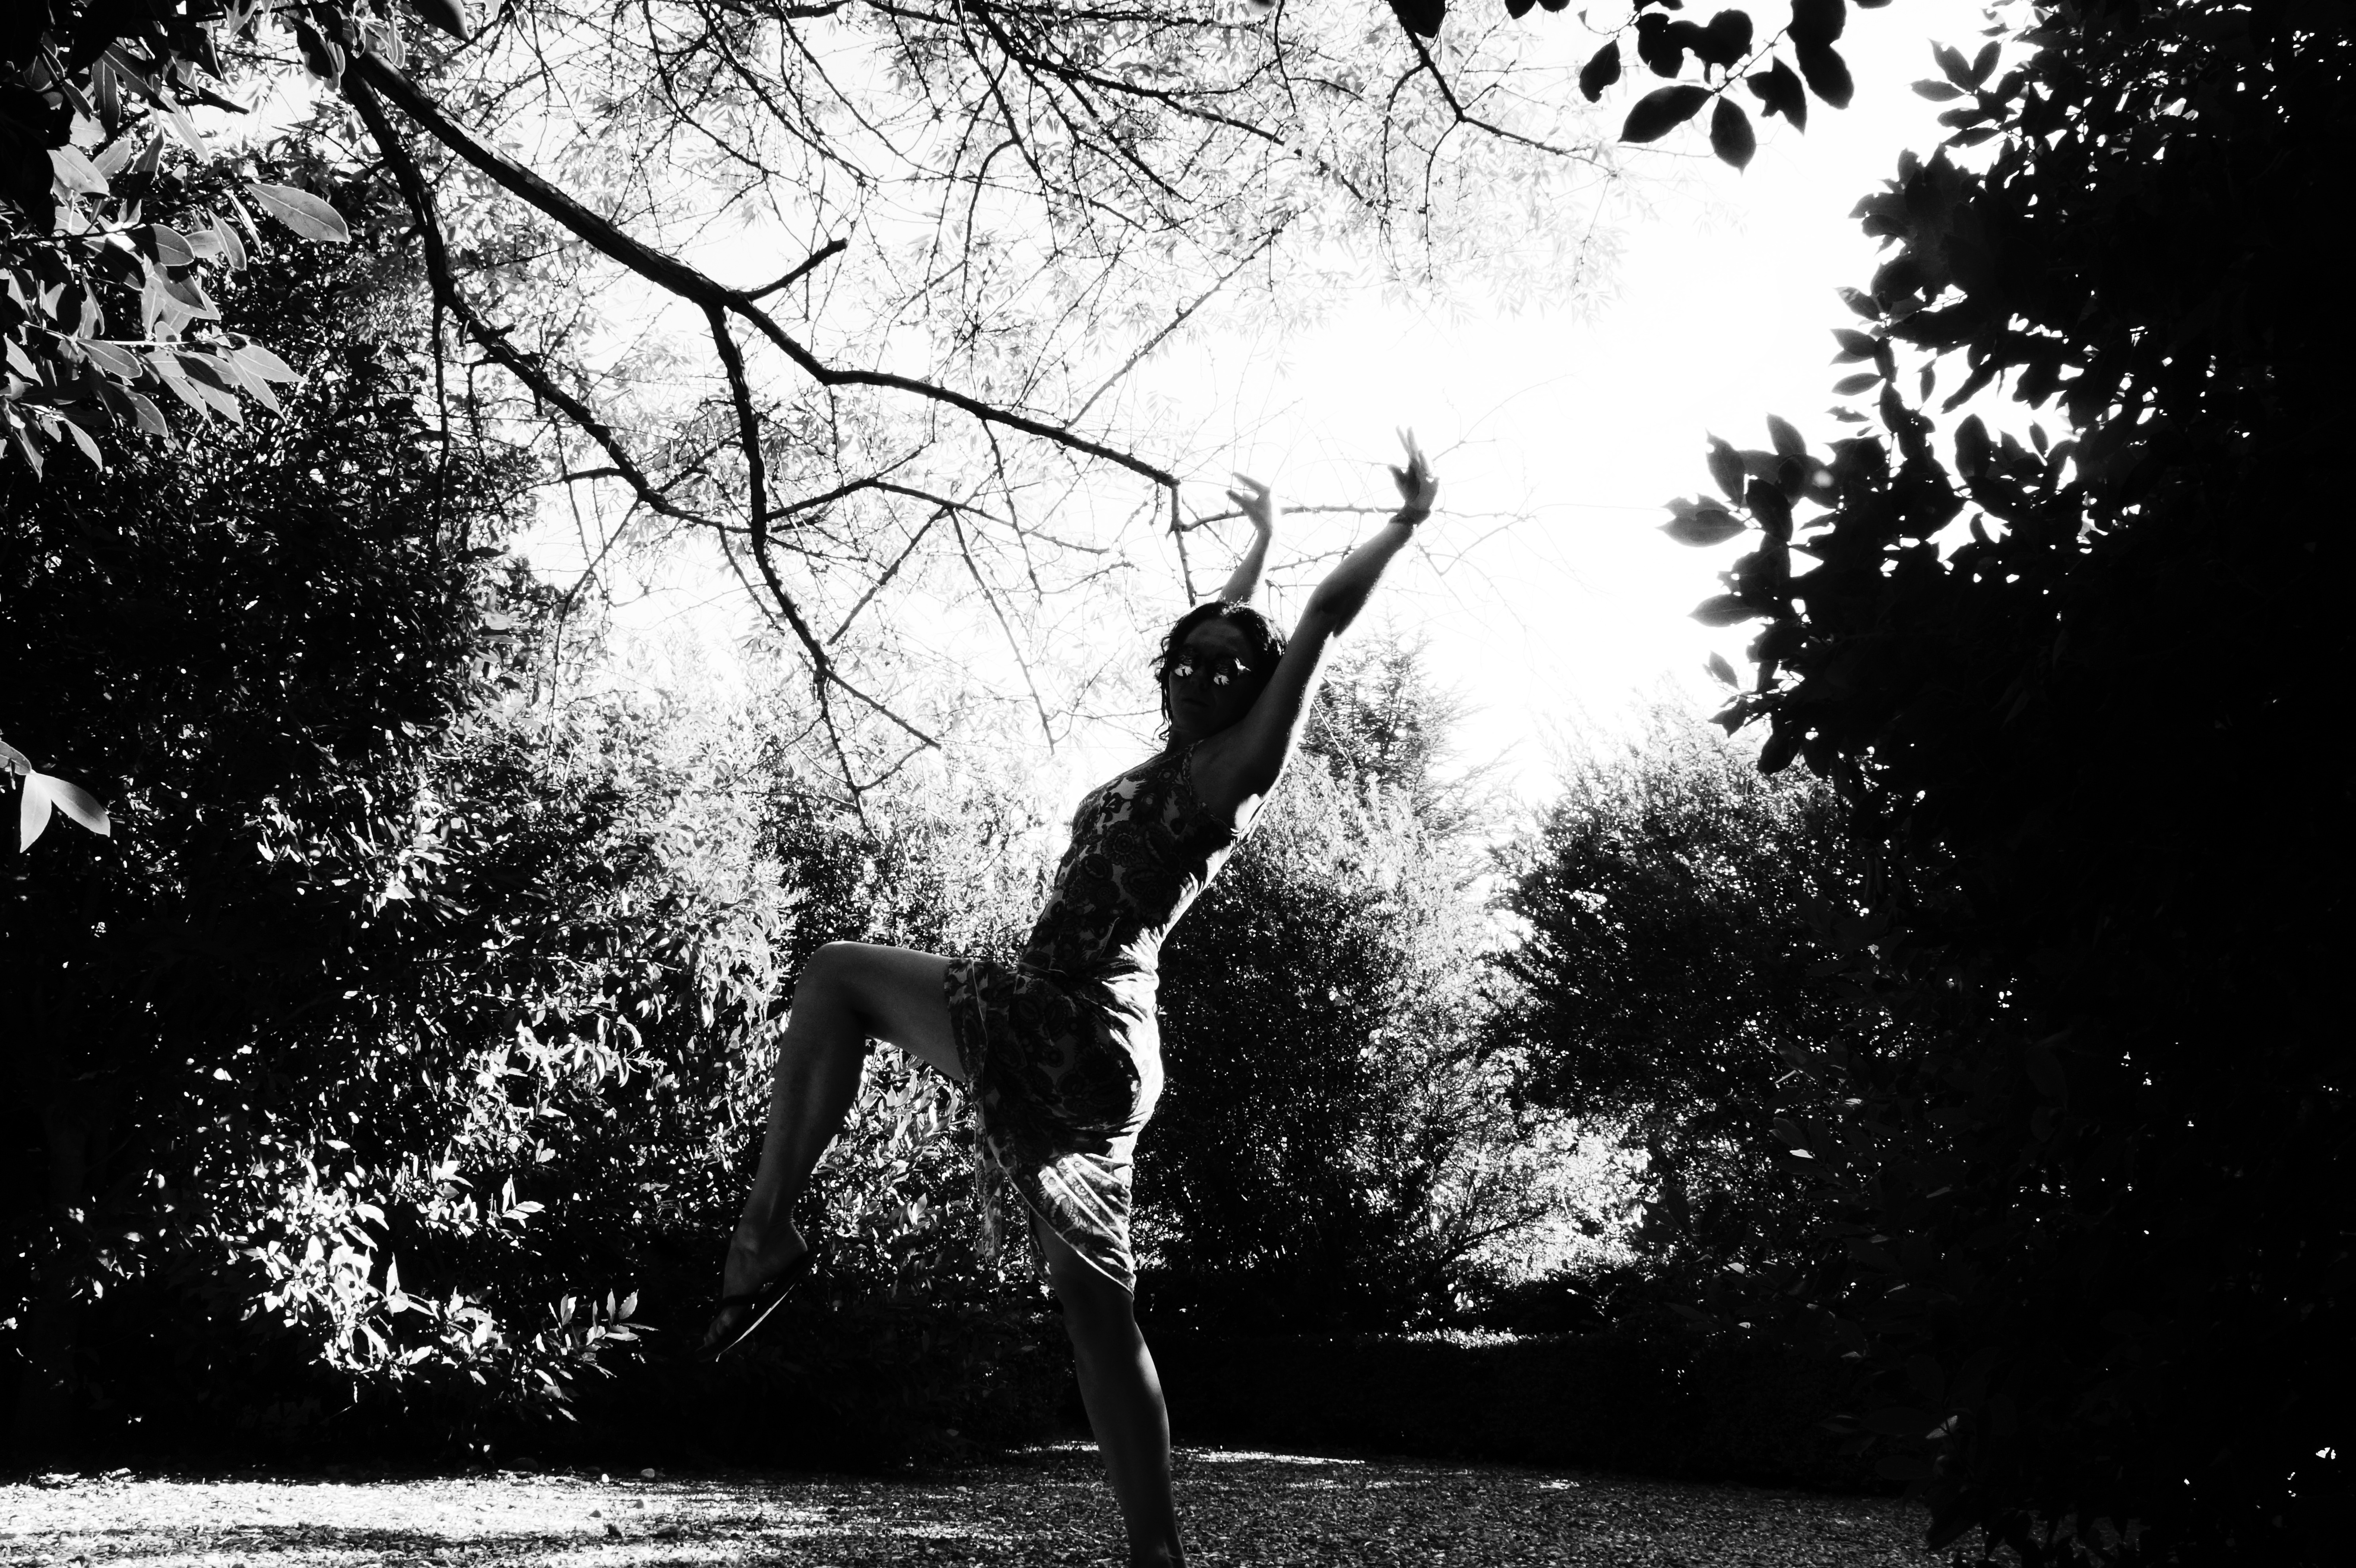 Woman dancing in a garden